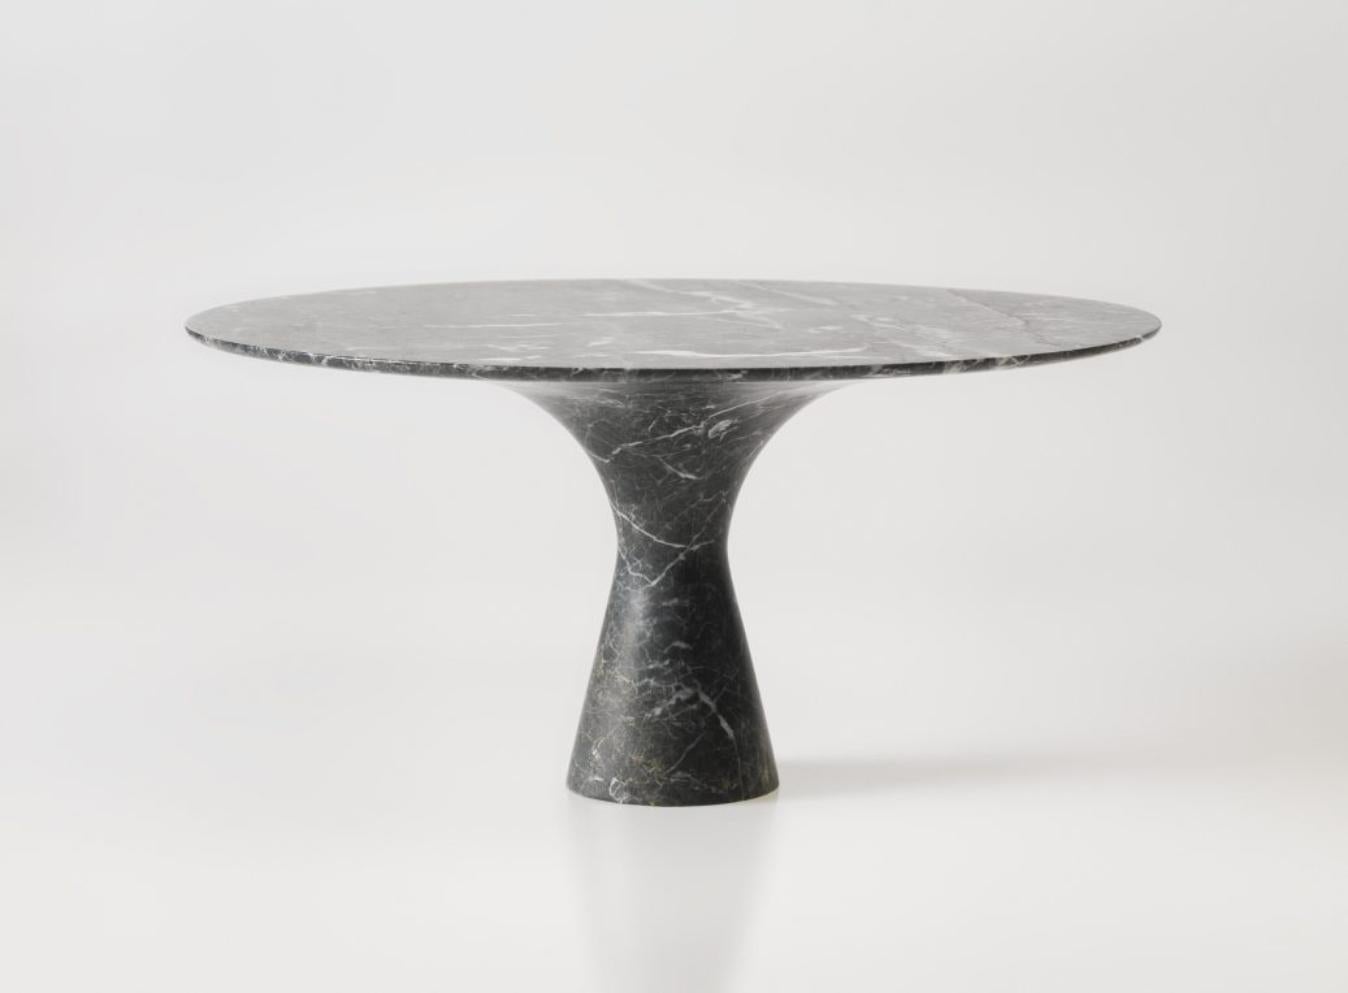 Table de salle à manger en marbre gris Saint Laurent raffinée et contemporaine 130/75
Dimensions : 130 x 75 cm
Matériaux : Gris Saint Laurent

Angelo est l'essence même d'une table ronde en pierre naturelle, une forme sculpturale dans un